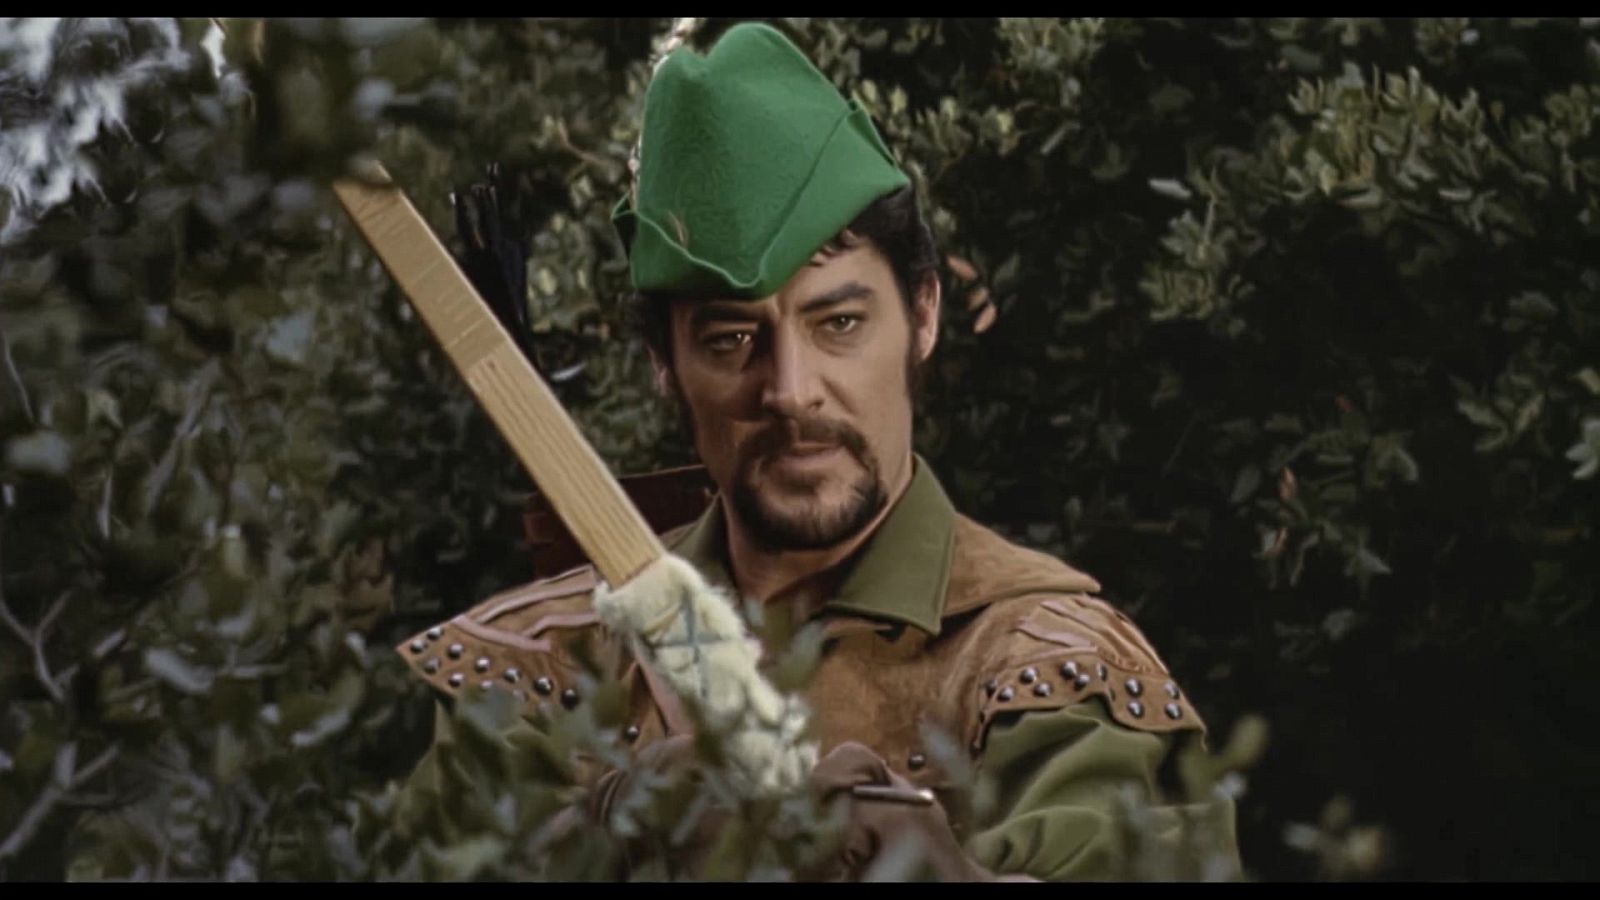 Mañanas de cine - Robin Hood, el arquero invencible - Documental en RTVE